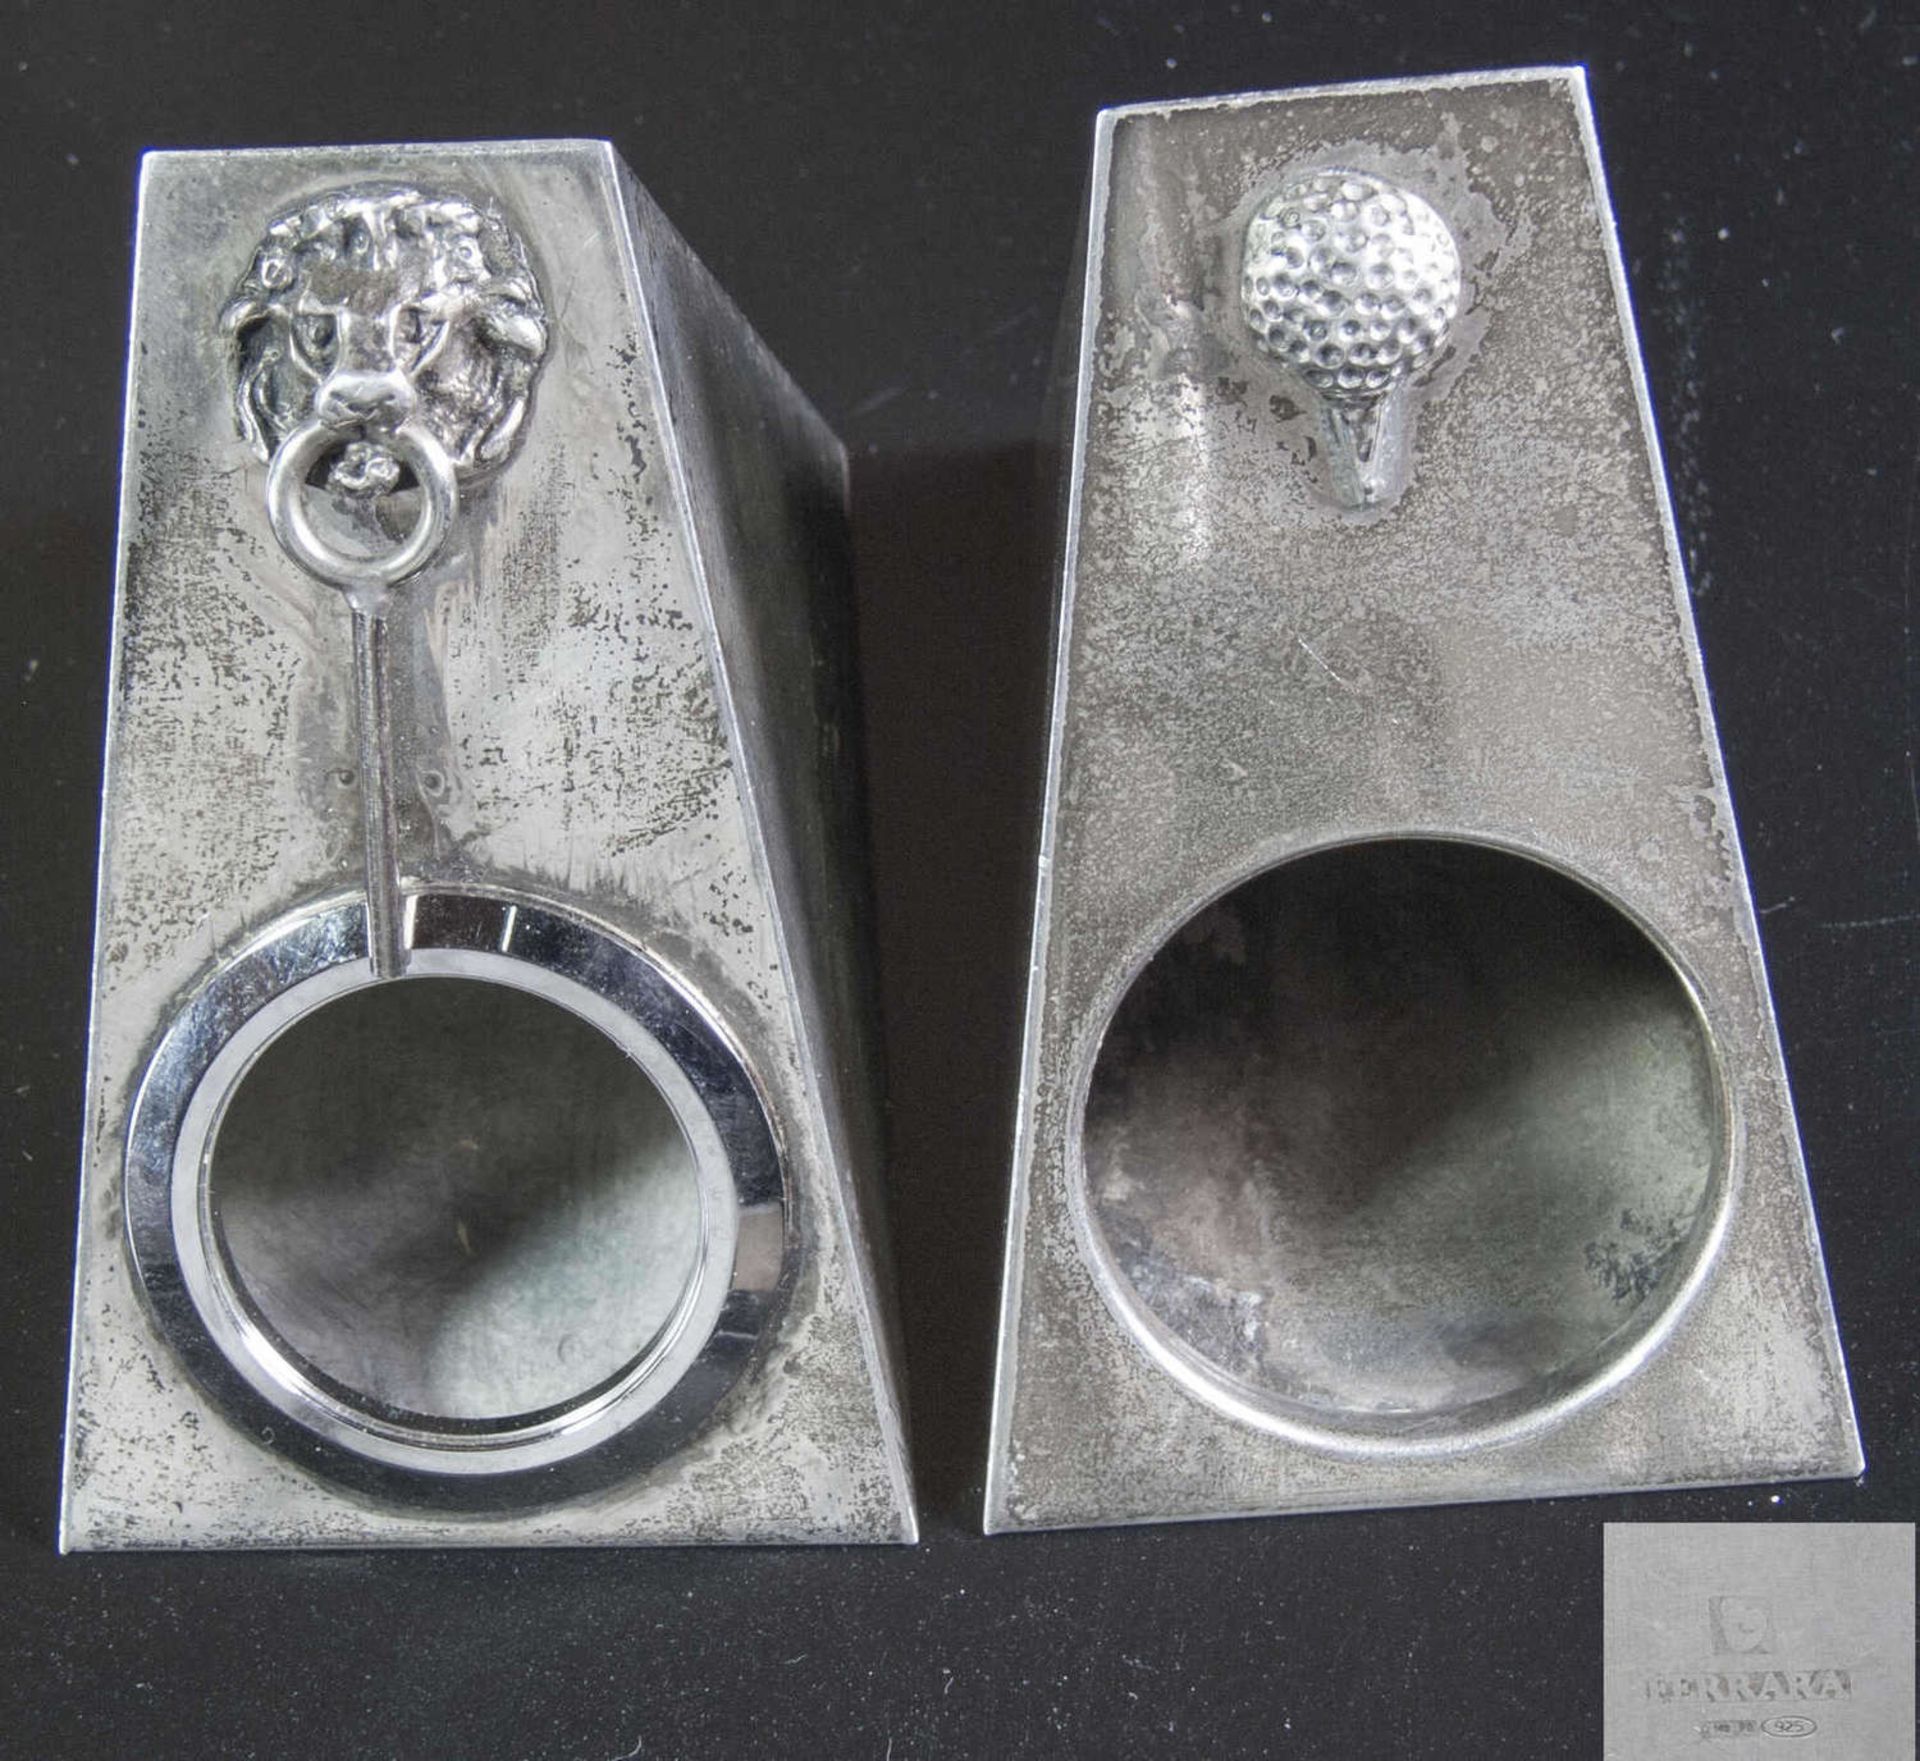 Zwei Ferrara Silber - Dosen. Silber 925, gepunzt. Gesamtgewicht: ca. 154 g. Maße: ca. ca. 80 mm x